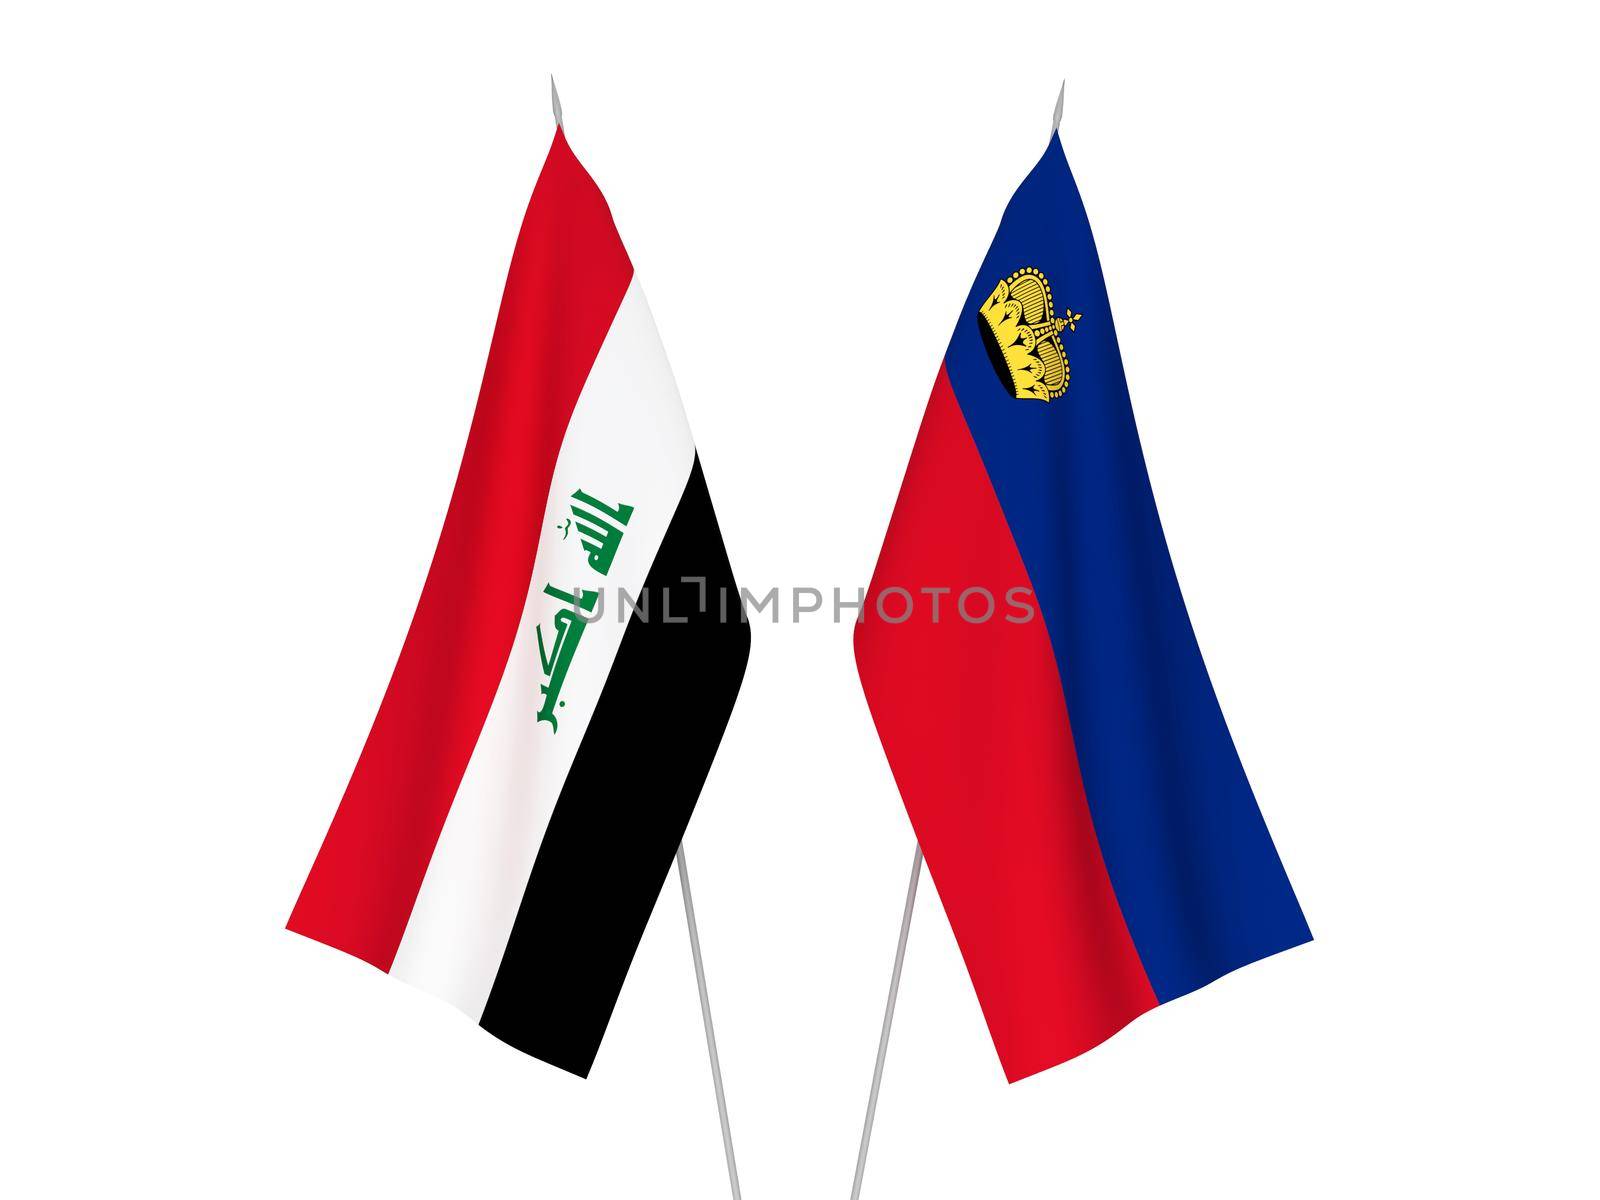 Iraq and Liechtenstein flags by epic33